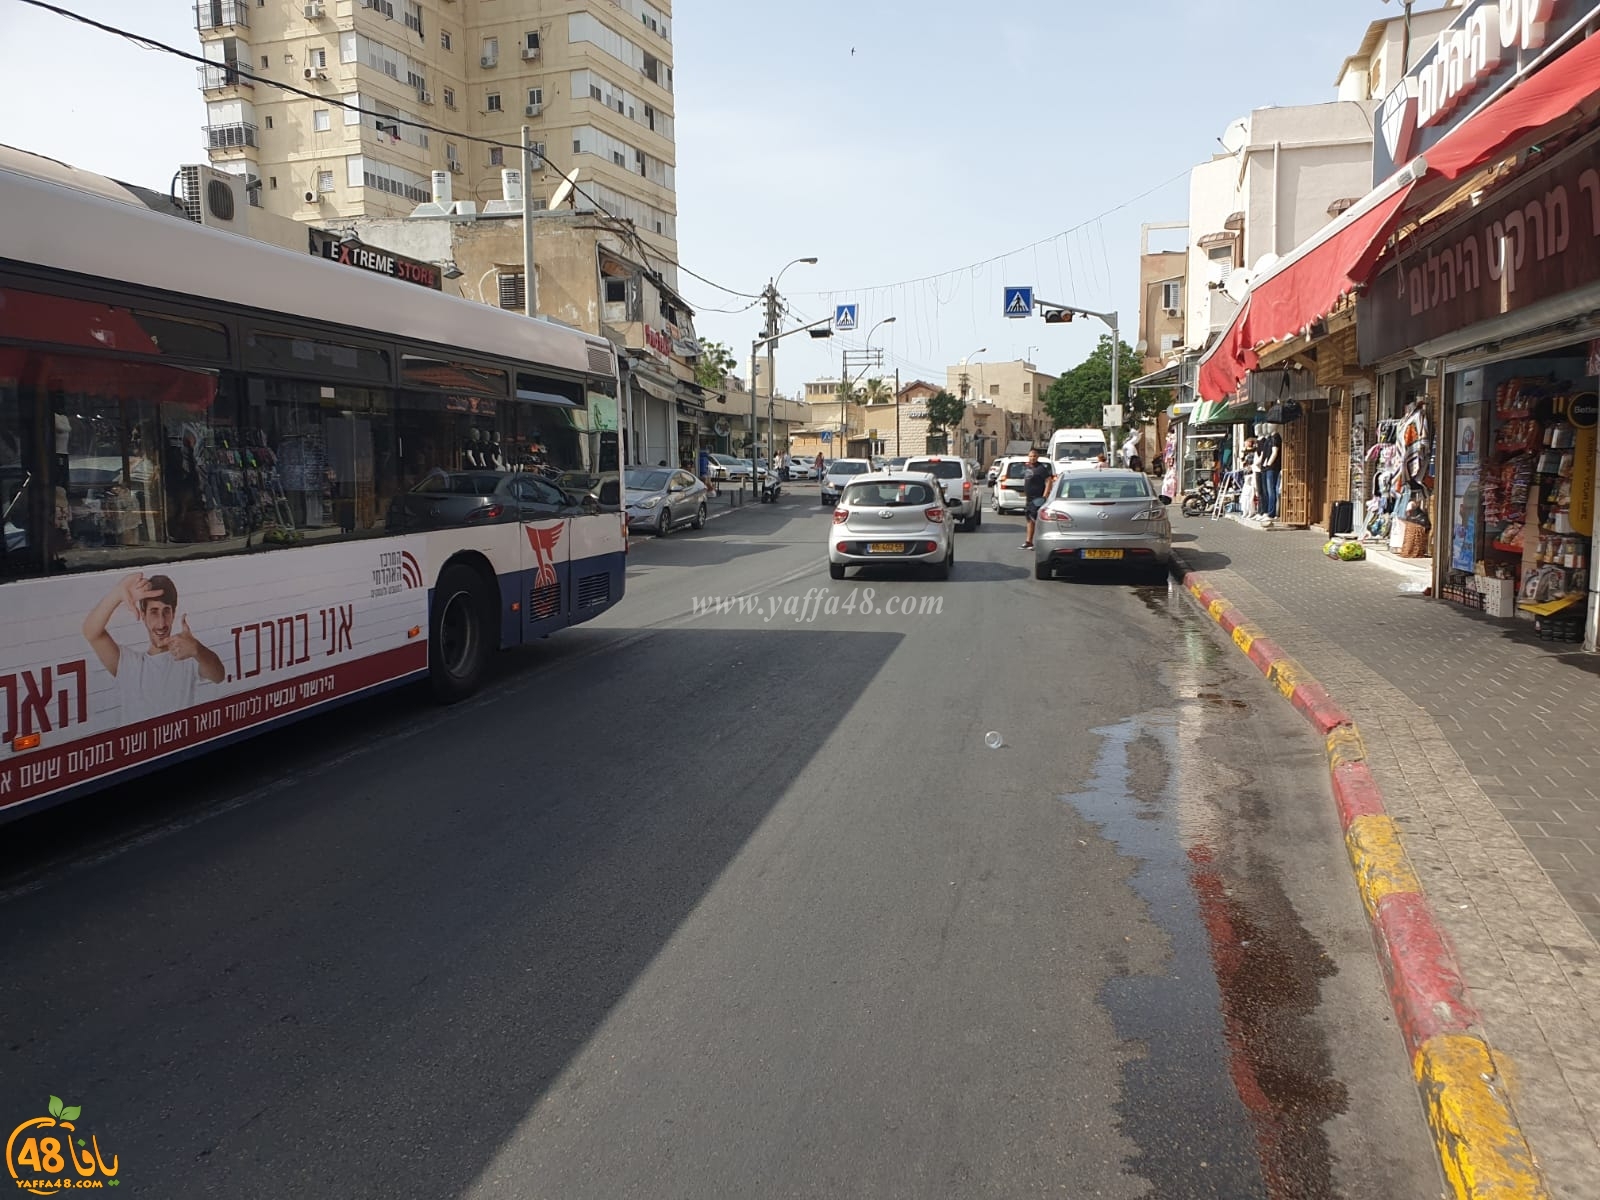   يافا: مطالب بإنشاء مطبات في شارع ييفت للحد من السرعة الزائدة وحوادث السير